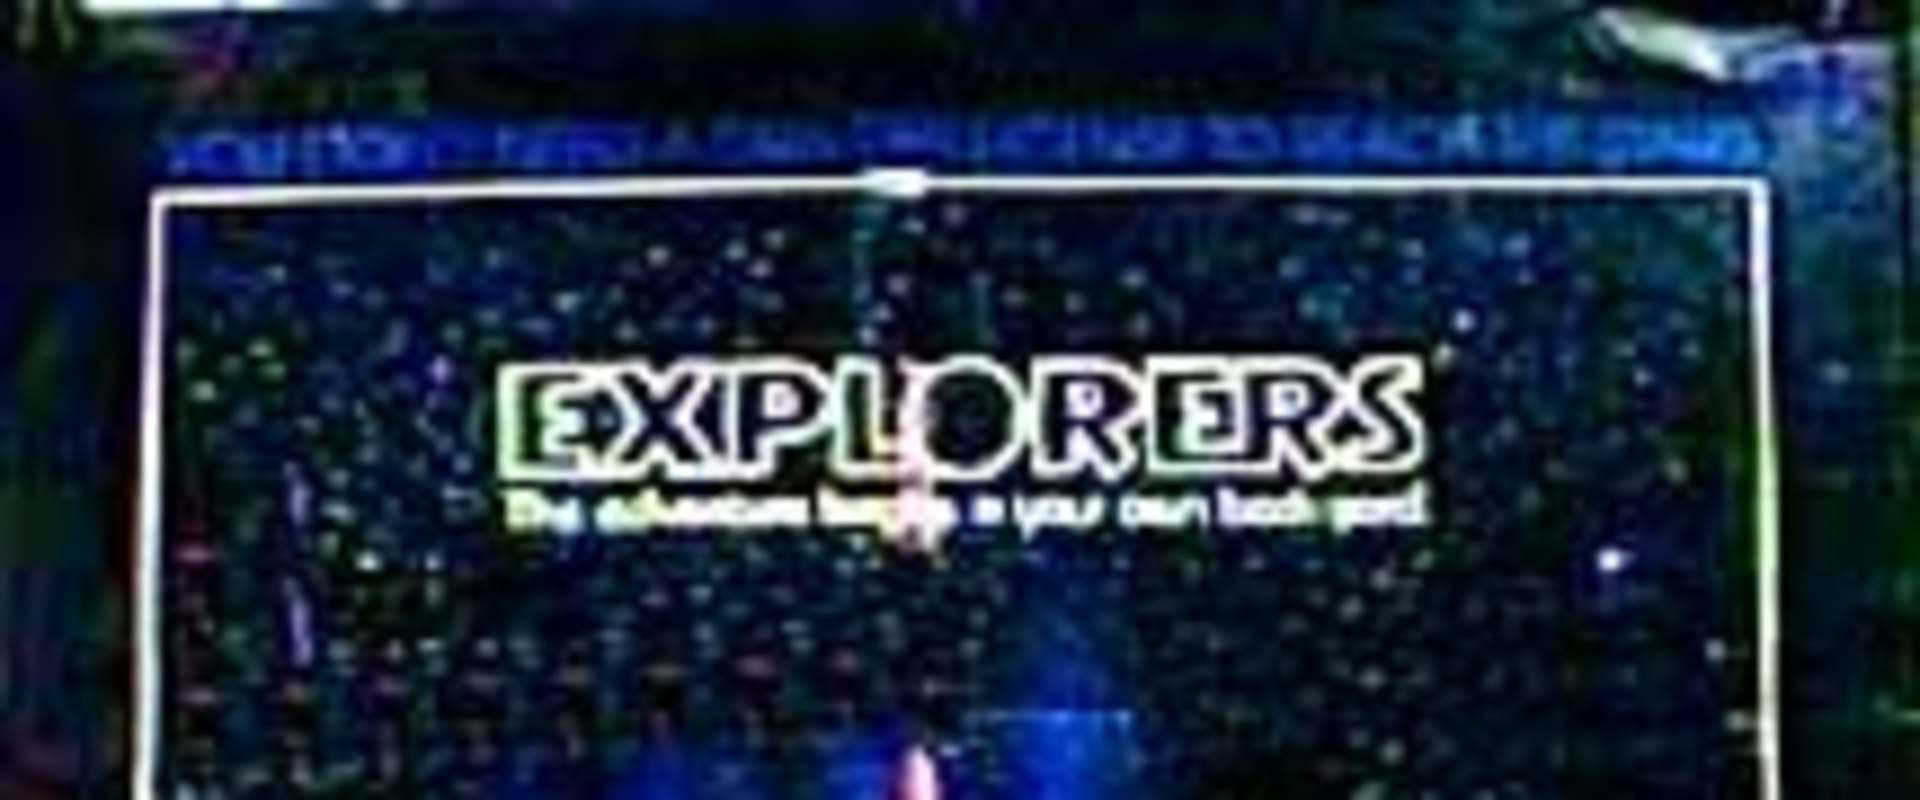 Explorers background 2